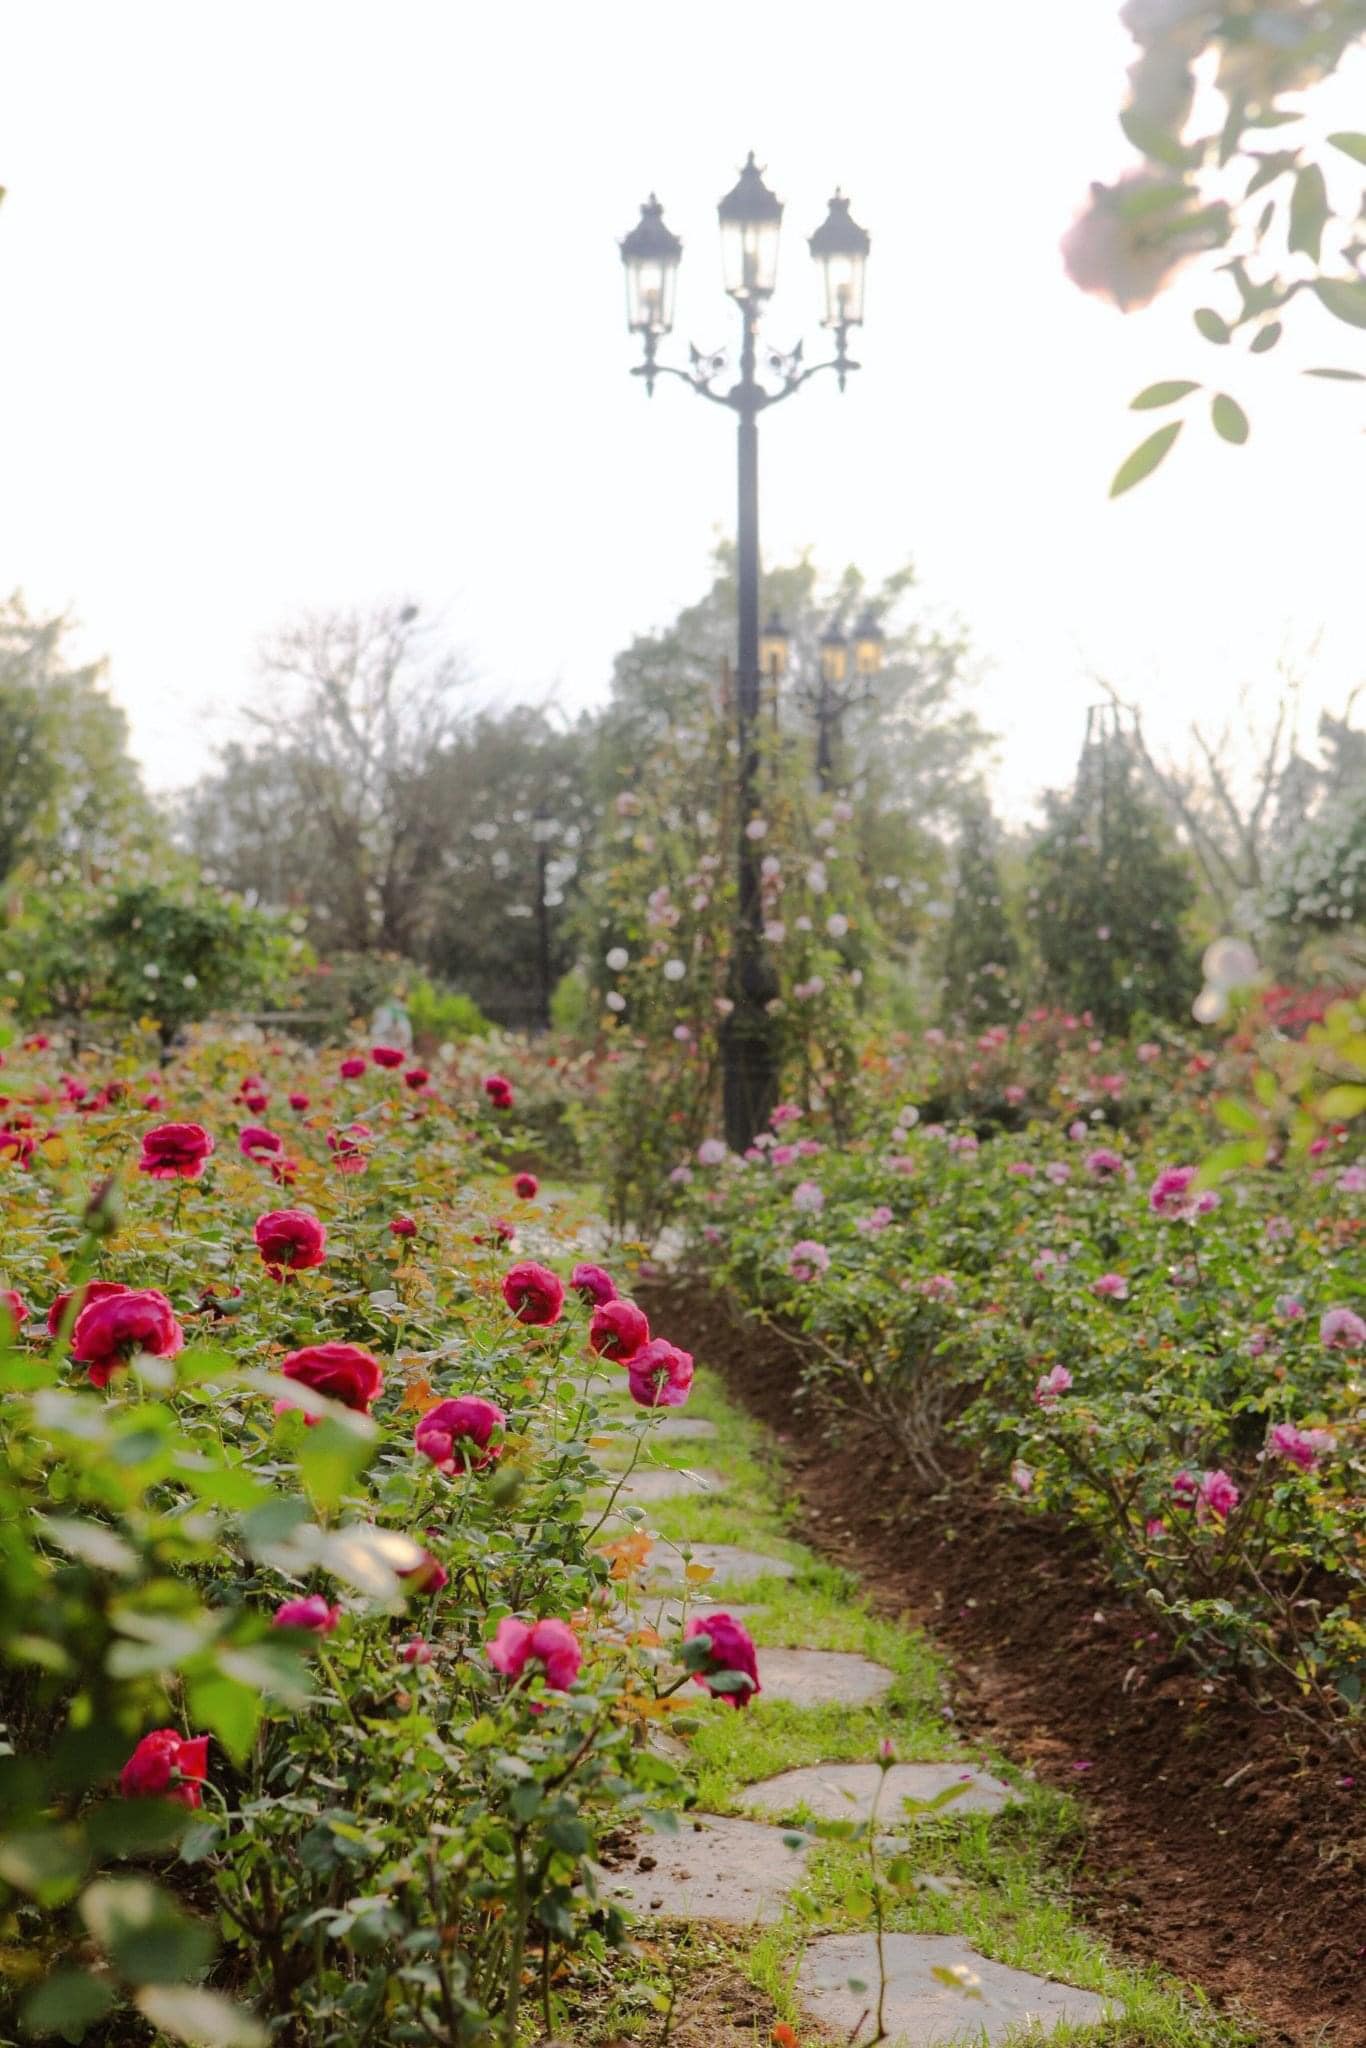 Trường đại học gây sốt với vườn hồng hàng trăm loại đẹp như cổ tích: Chỉ ngắm thôi cũng đã đầy cảm hứng học tập- Ảnh 4.